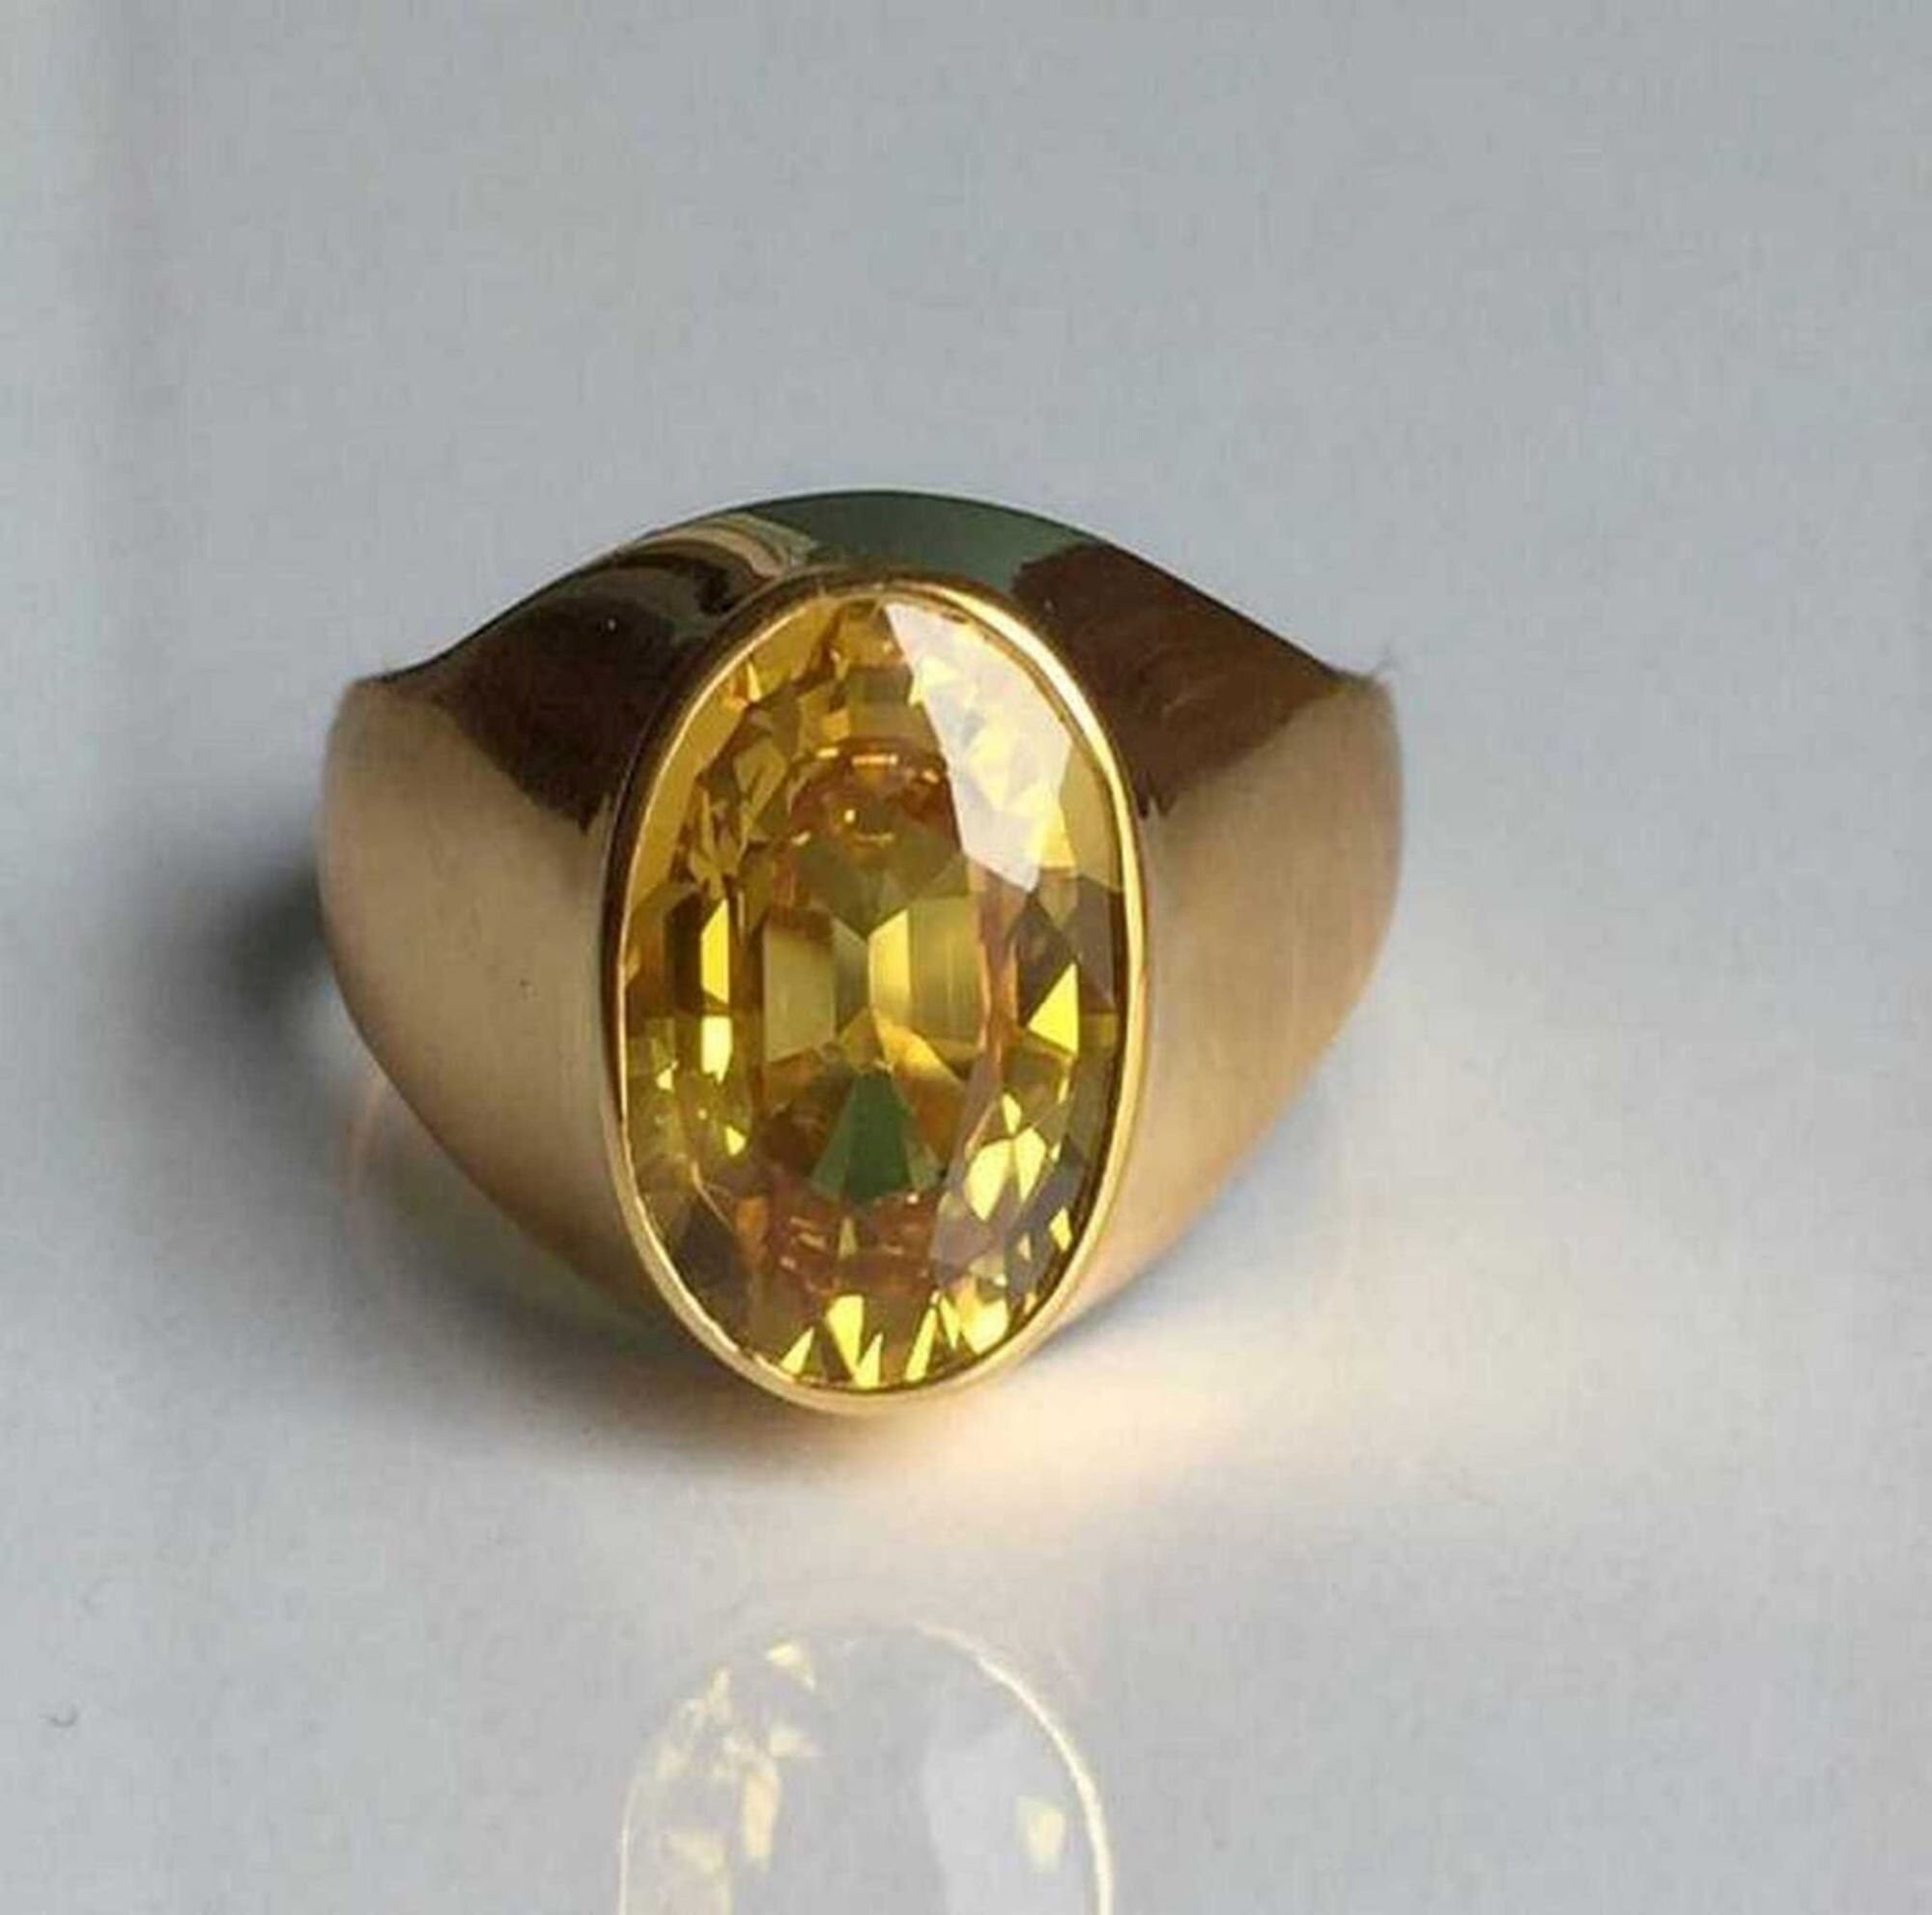 Pukhraj Stone Or Yellow Sapphire Gemstone: How to identify real and fake  topaz? Know why this gemstone is worn - असली और नकली पुखराज की कैसे करें  पहचान? जानिए क्यों धारण किया